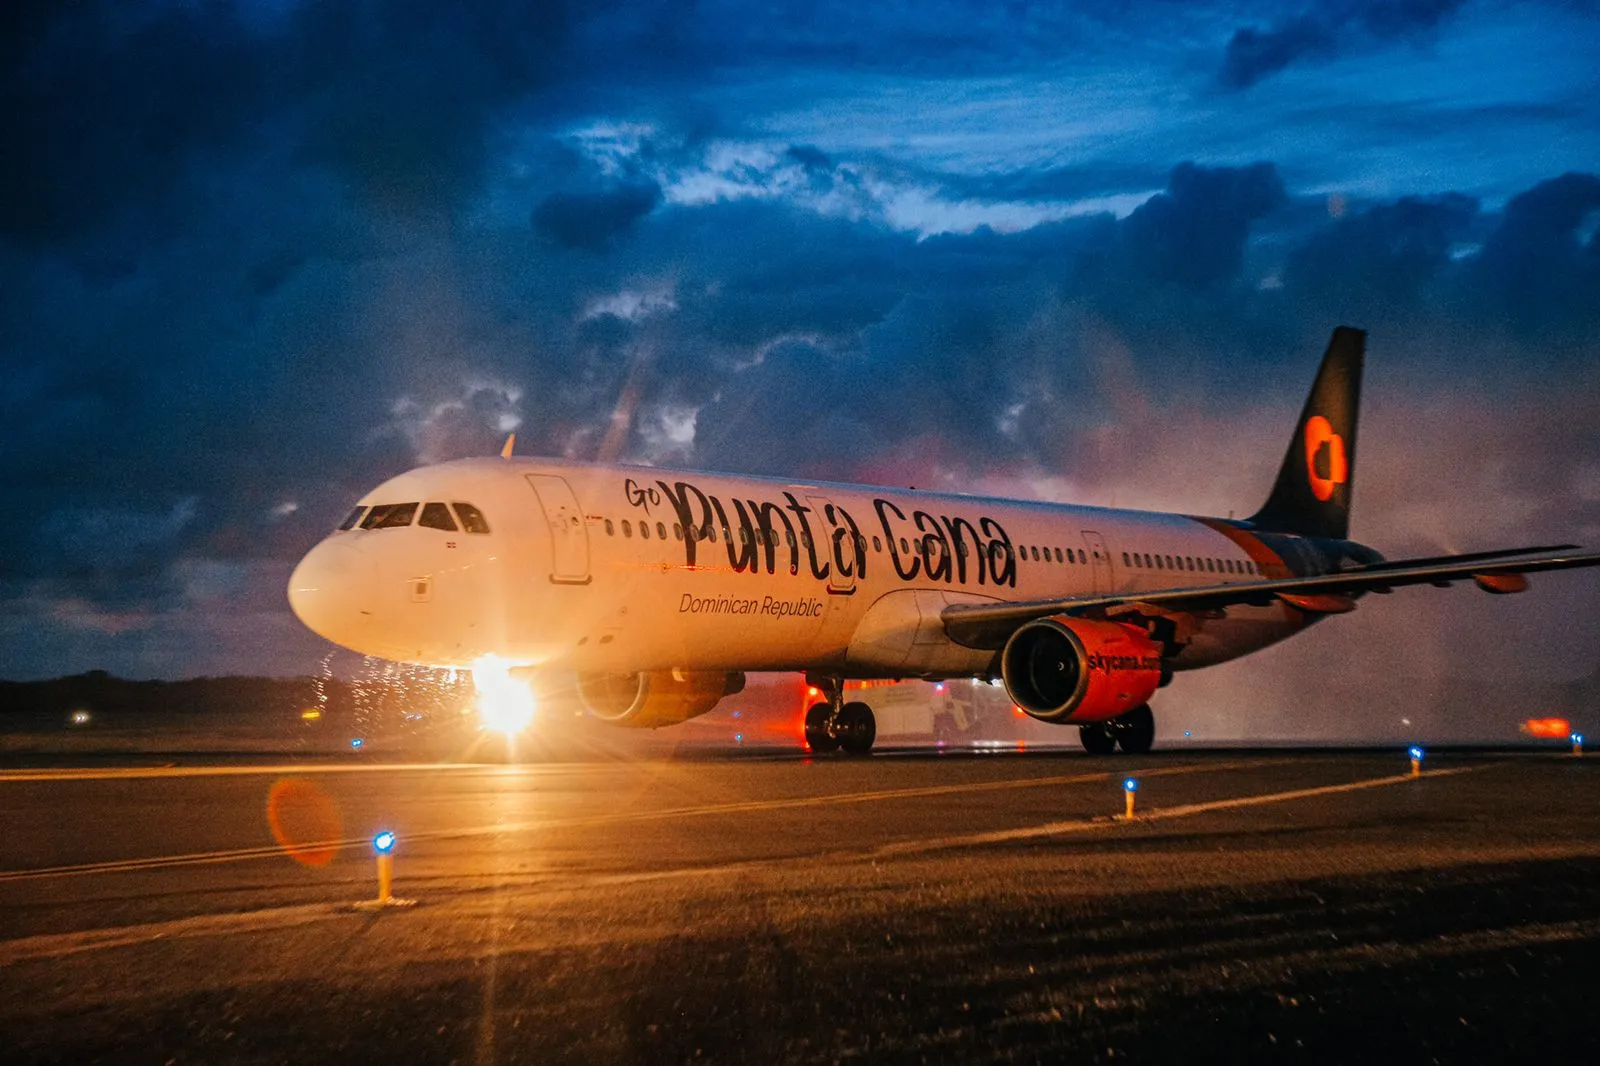 Sky Cana recibe su tercera aeronave y la dedica al polo turístico Punta Cana